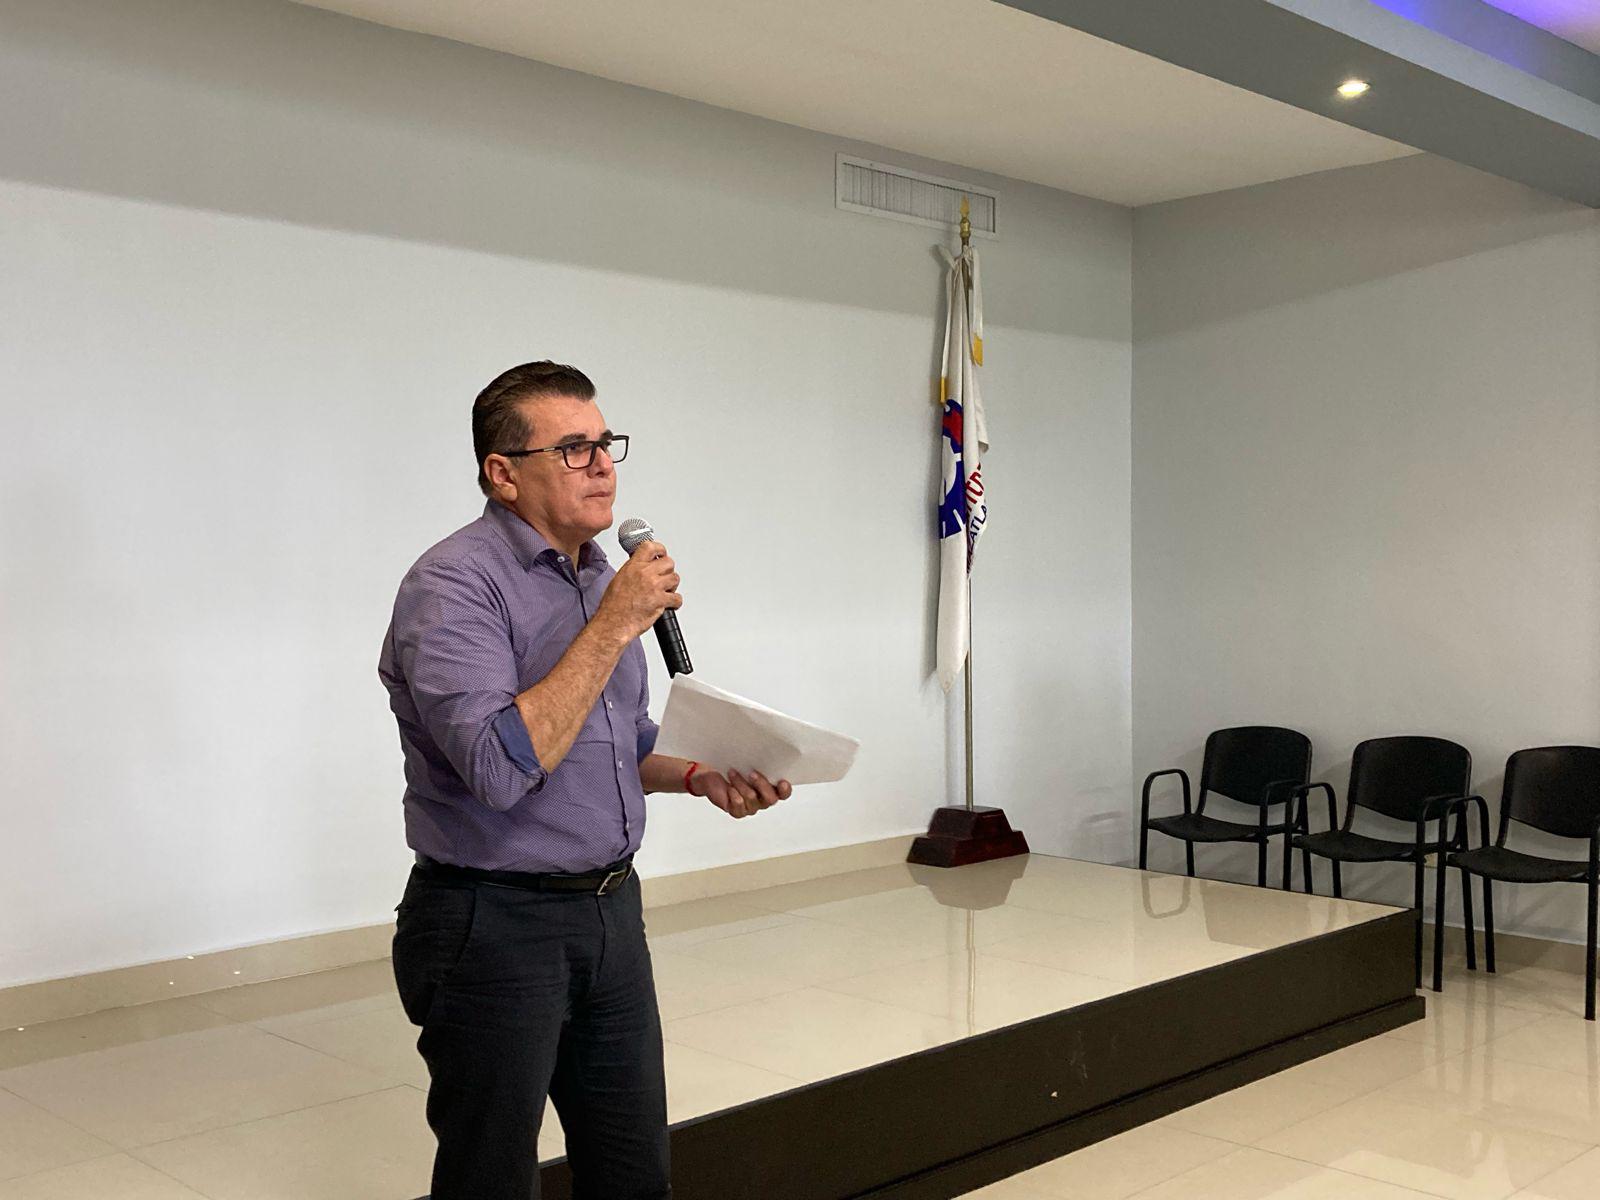 $!Avanza Ayuntamiento de Mazatlán en cumplimiento de compromisos de Agenda Ciudadana Anticorrupción